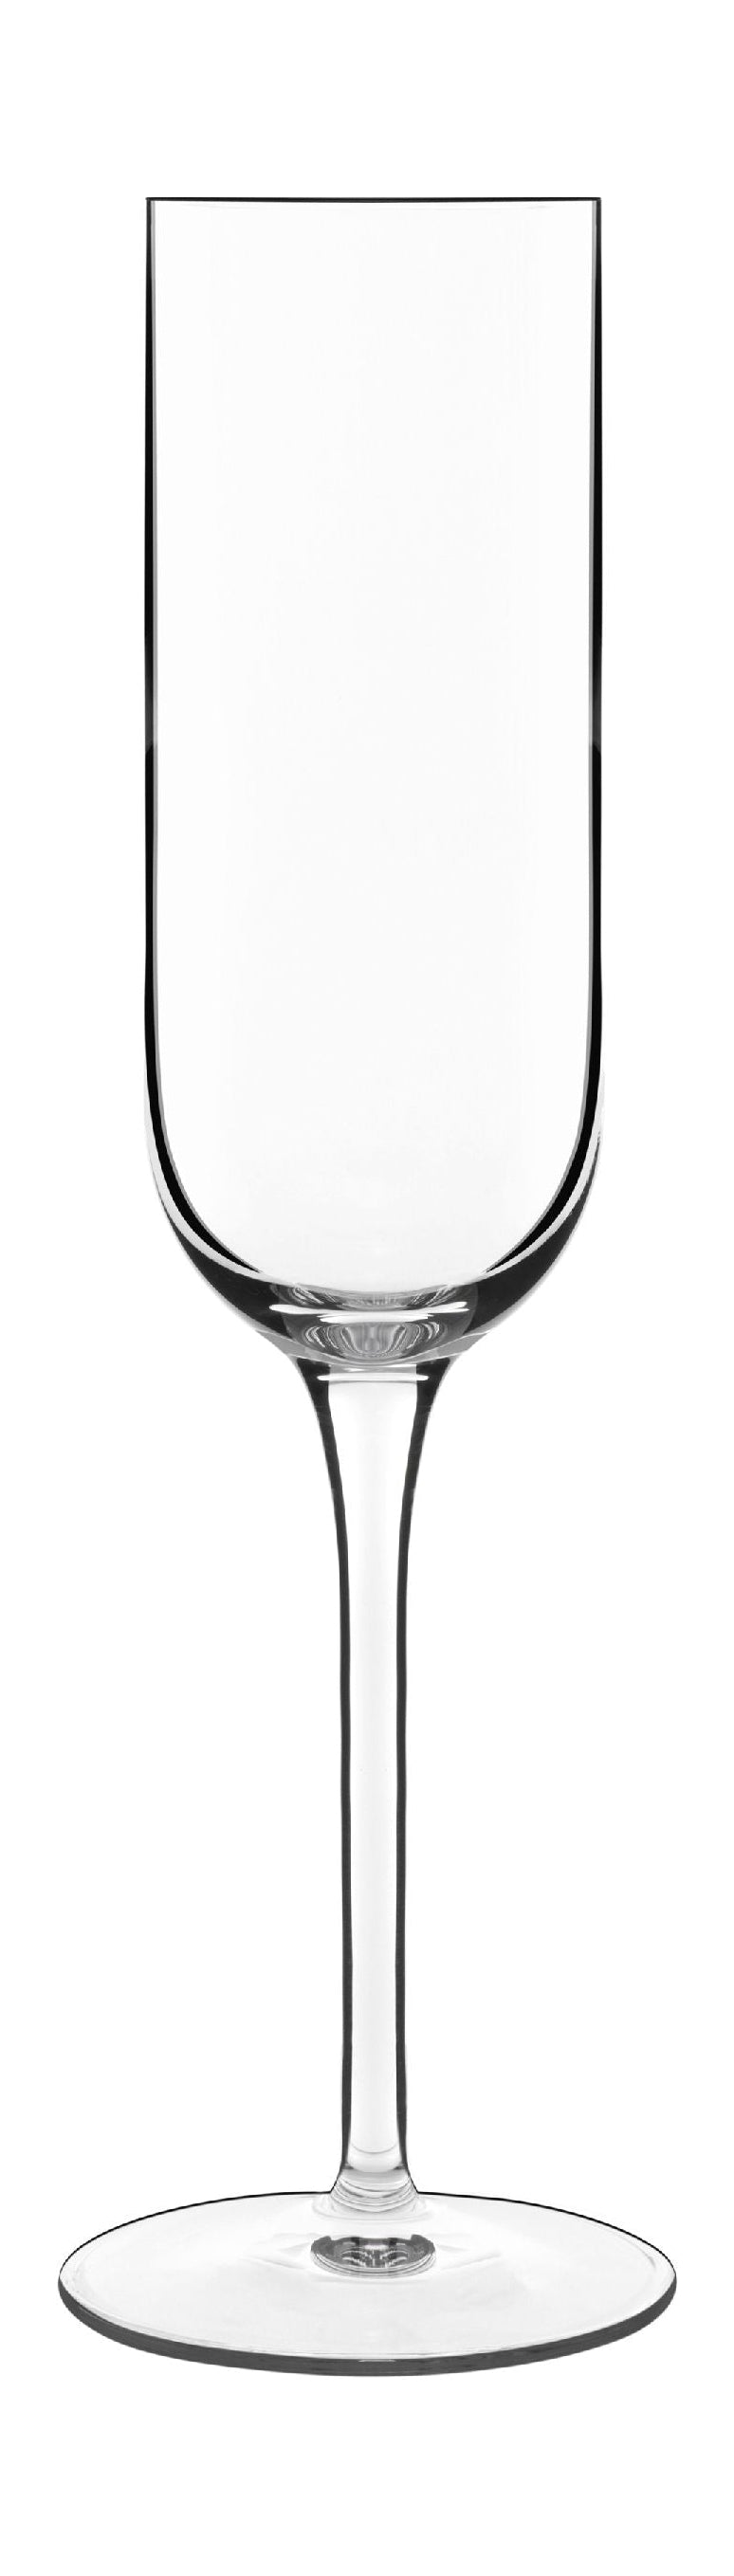 Luigi Bormioli Vinalia Champagne Glass Prosecco 21 CL 6 PCS.